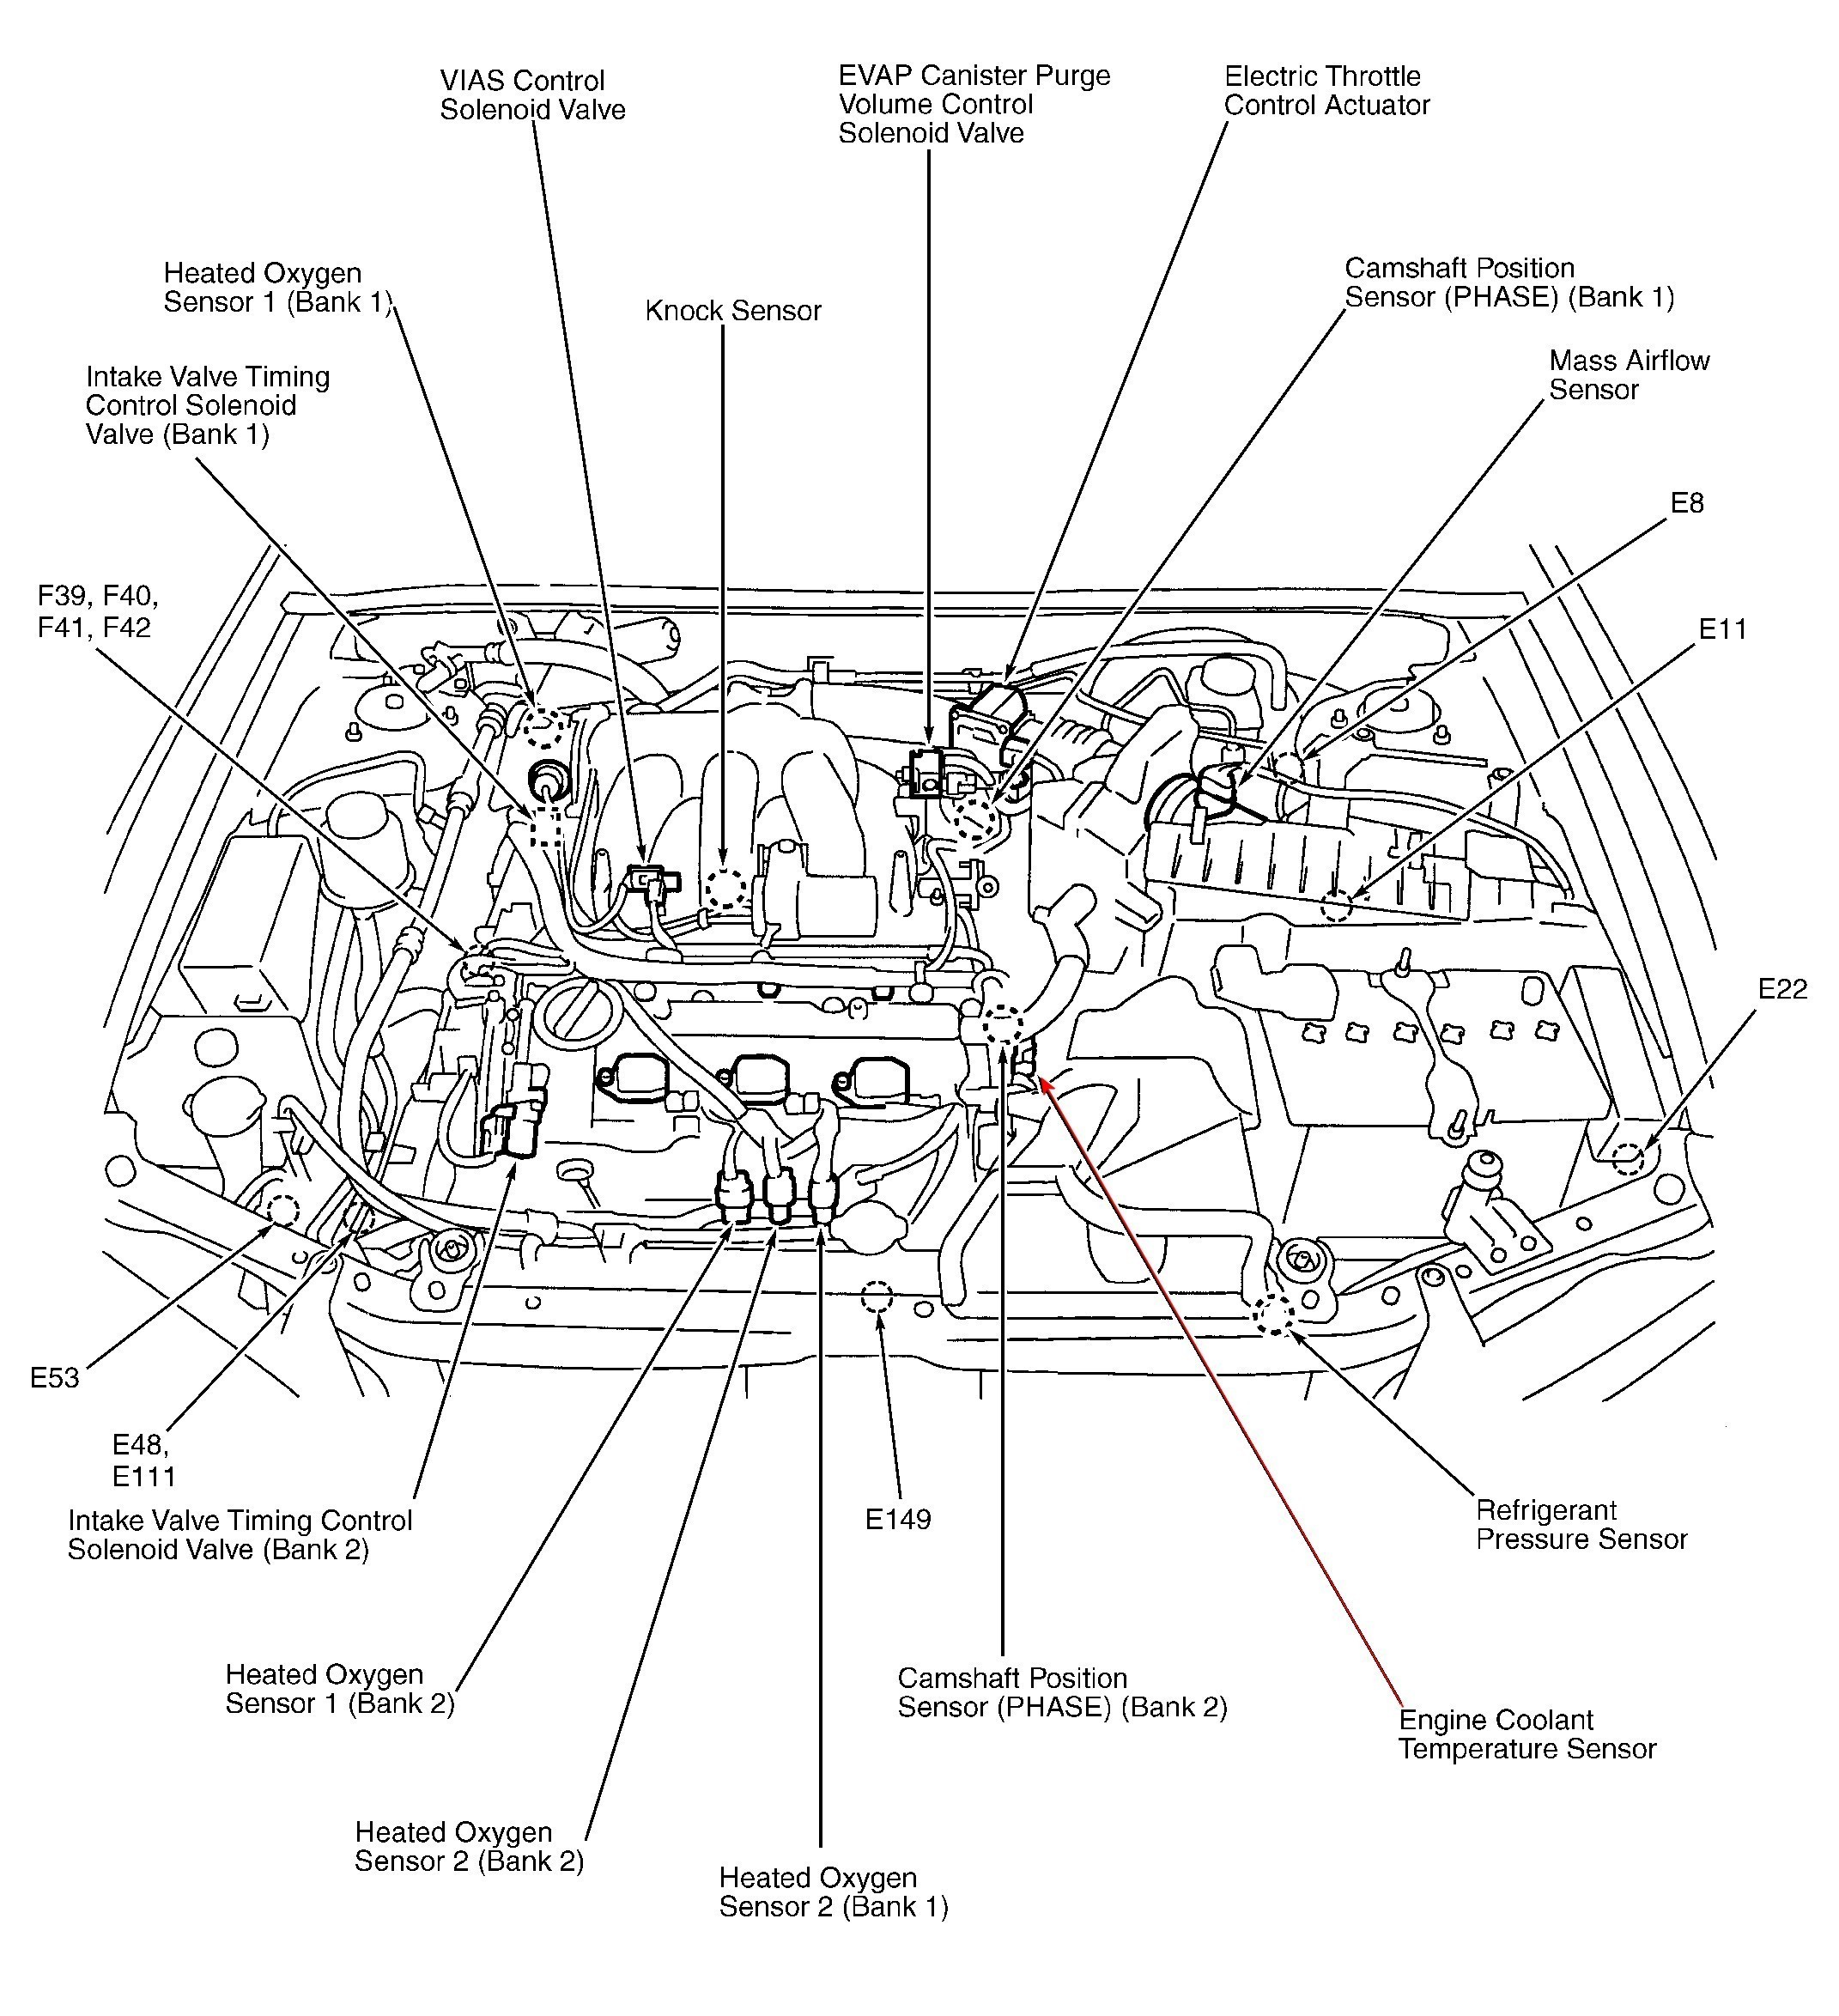 2001 Mitsubishi Galant Engine Diagram Mitsubishi Eclipse Stereo Wiring Diagram Shahsramblings Of 2001 Mitsubishi Galant Engine Diagram